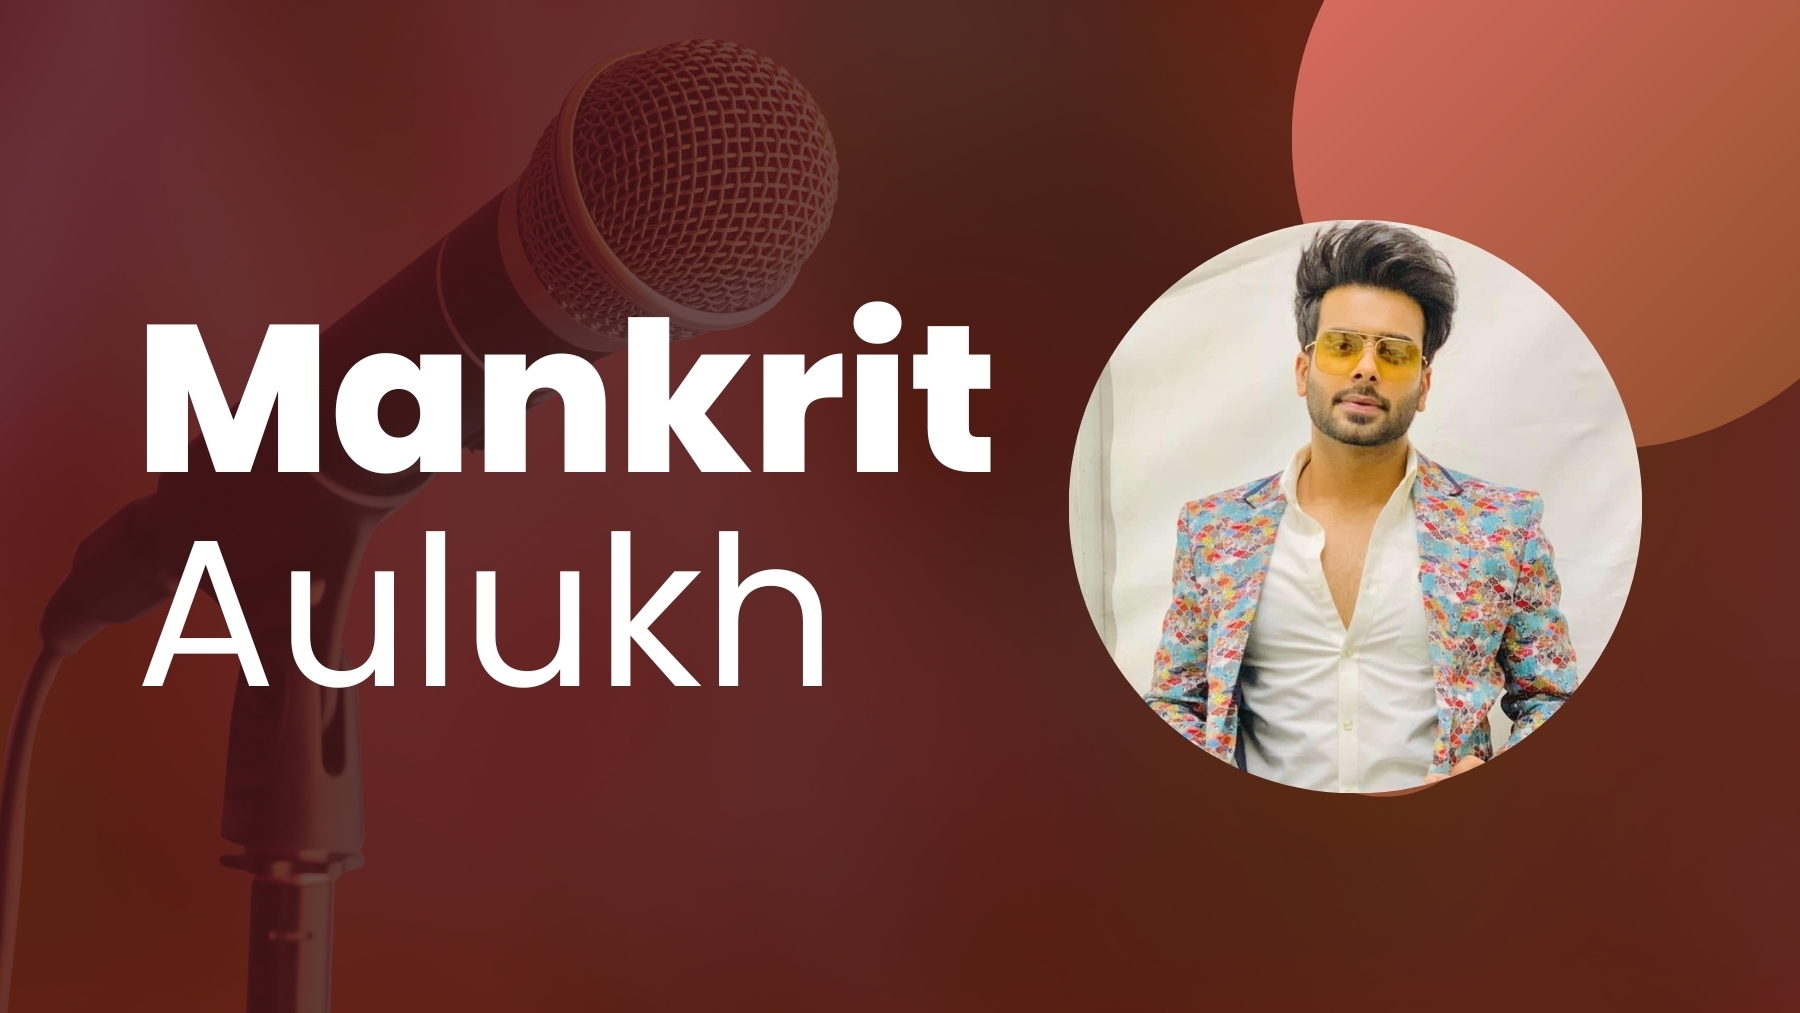 Markirt Aulukh punjabi singer from india